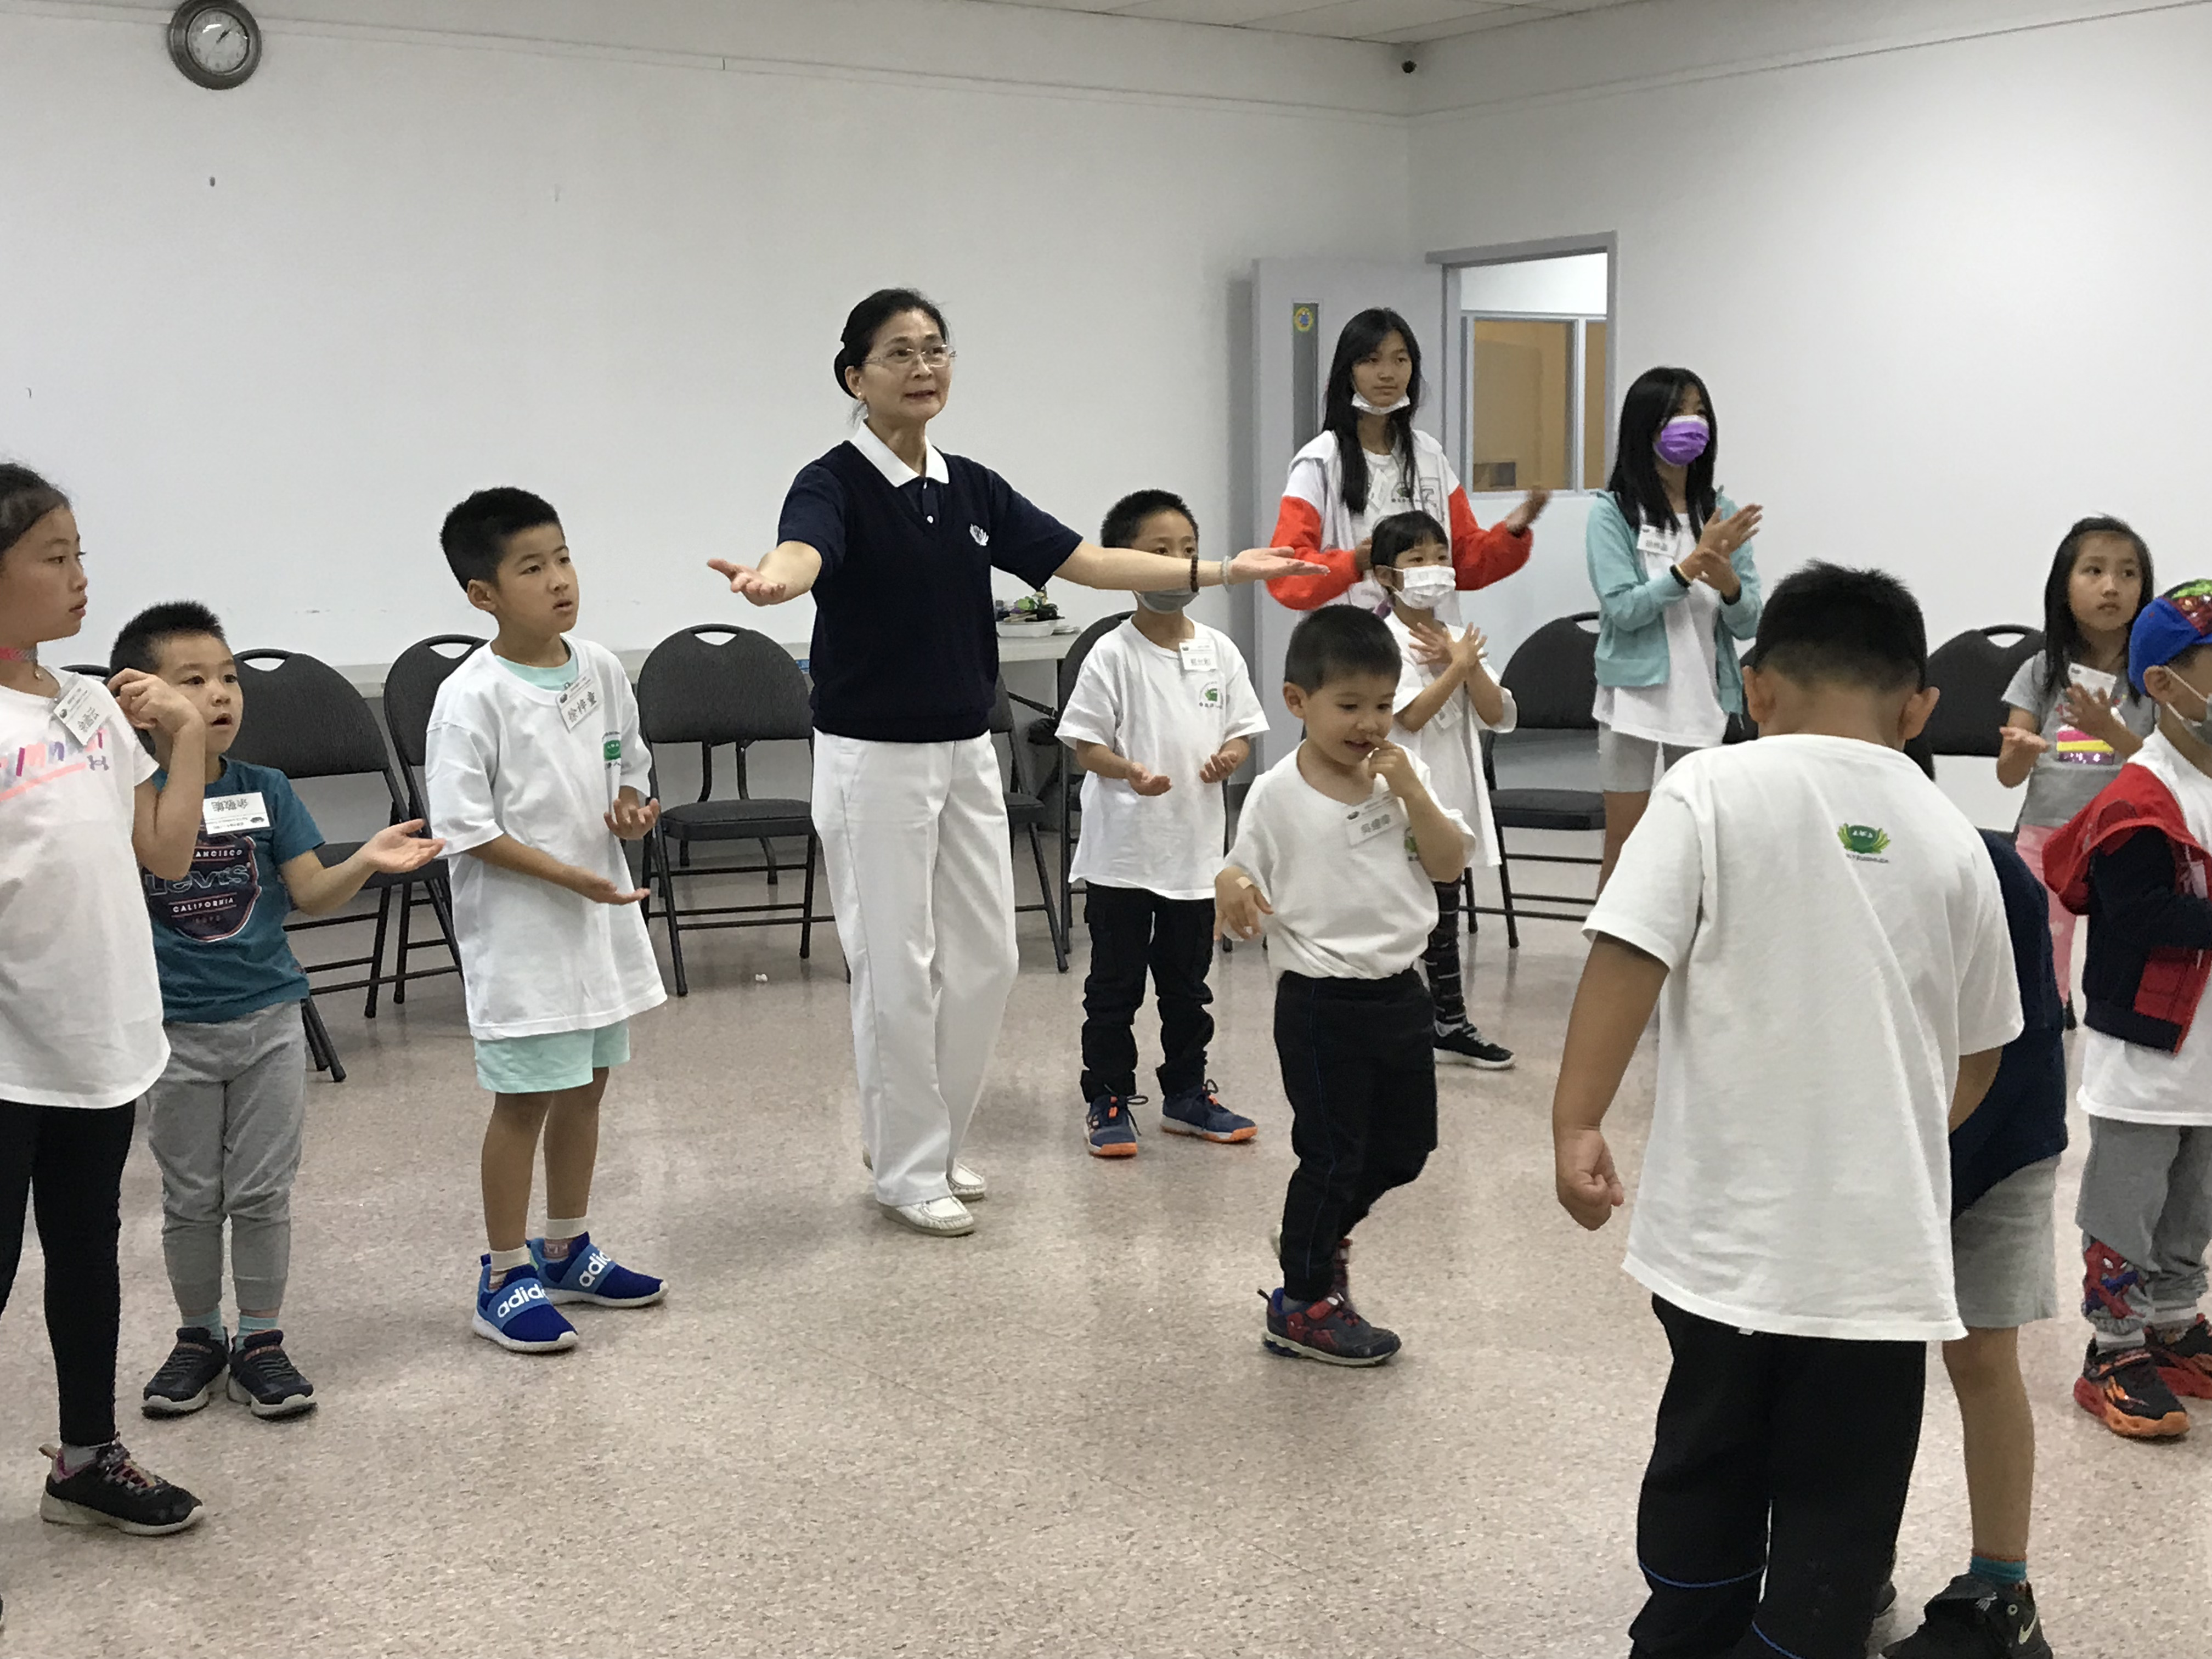 大班組的學員們在進行華語歌唱練習